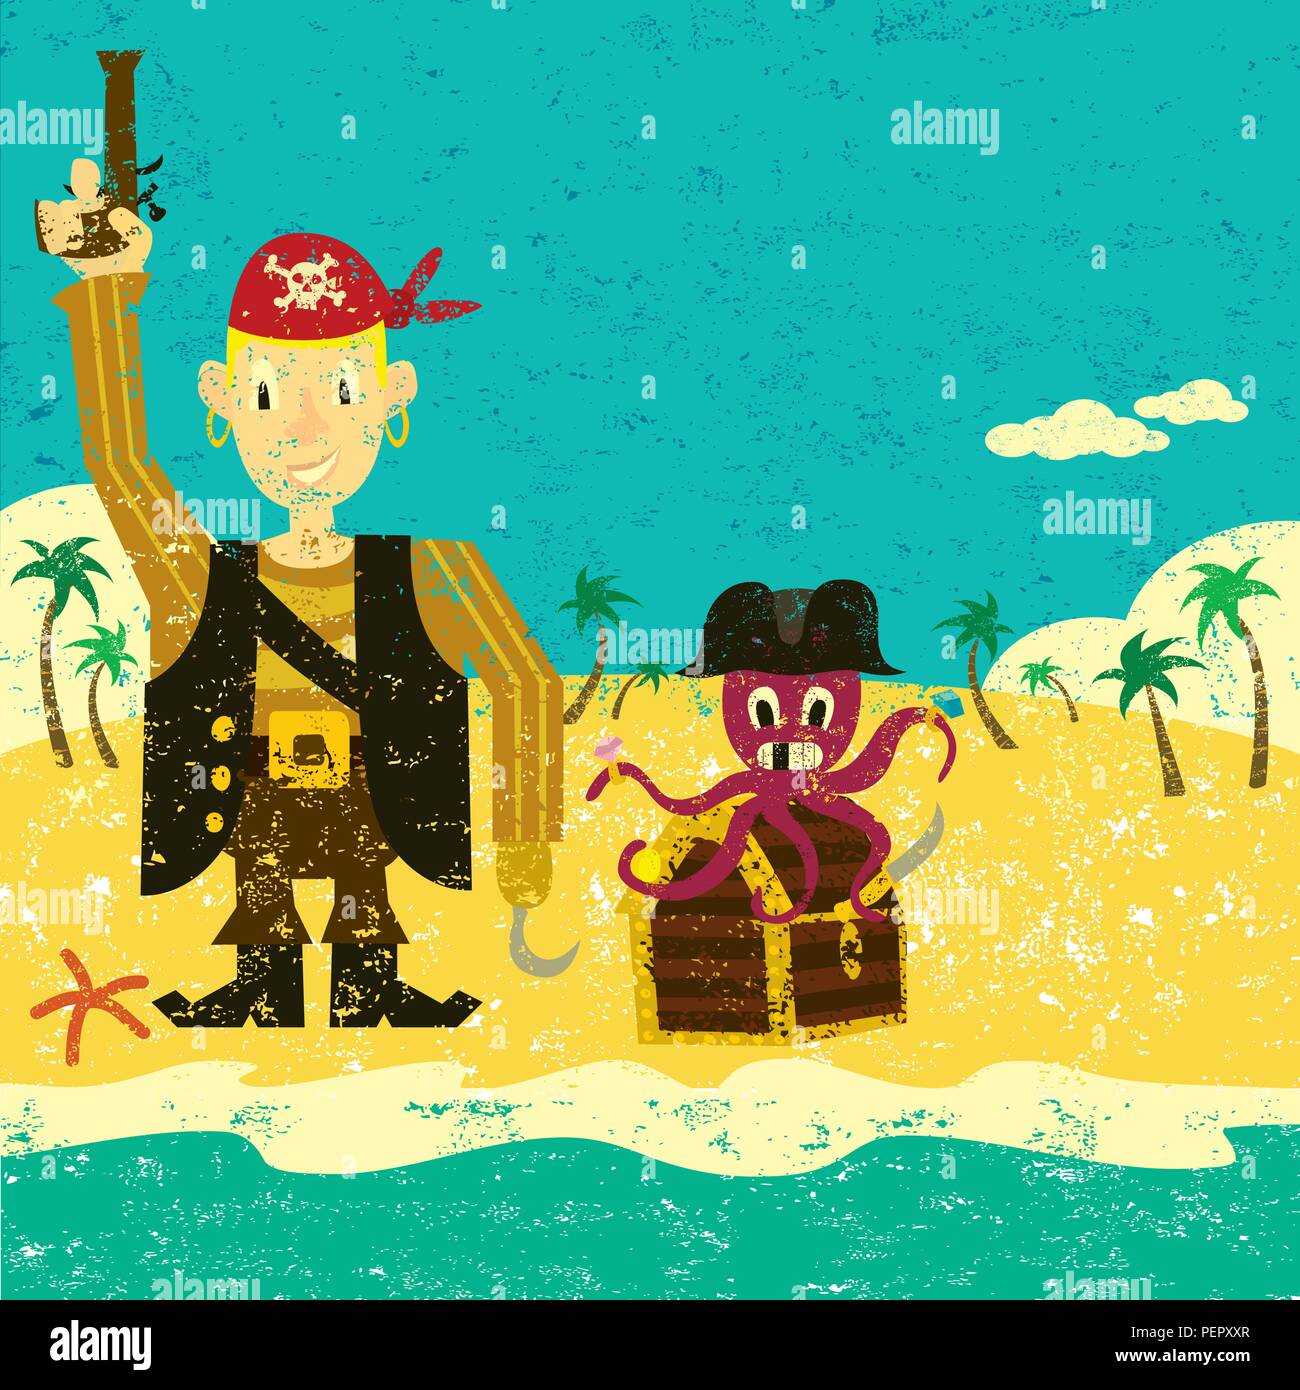 Pirat Junge mit einer Krake. Ein Pirat Junge mit einem Oktopus und eine Schatztruhe auf einer einsamen Insel. Stock Vektor